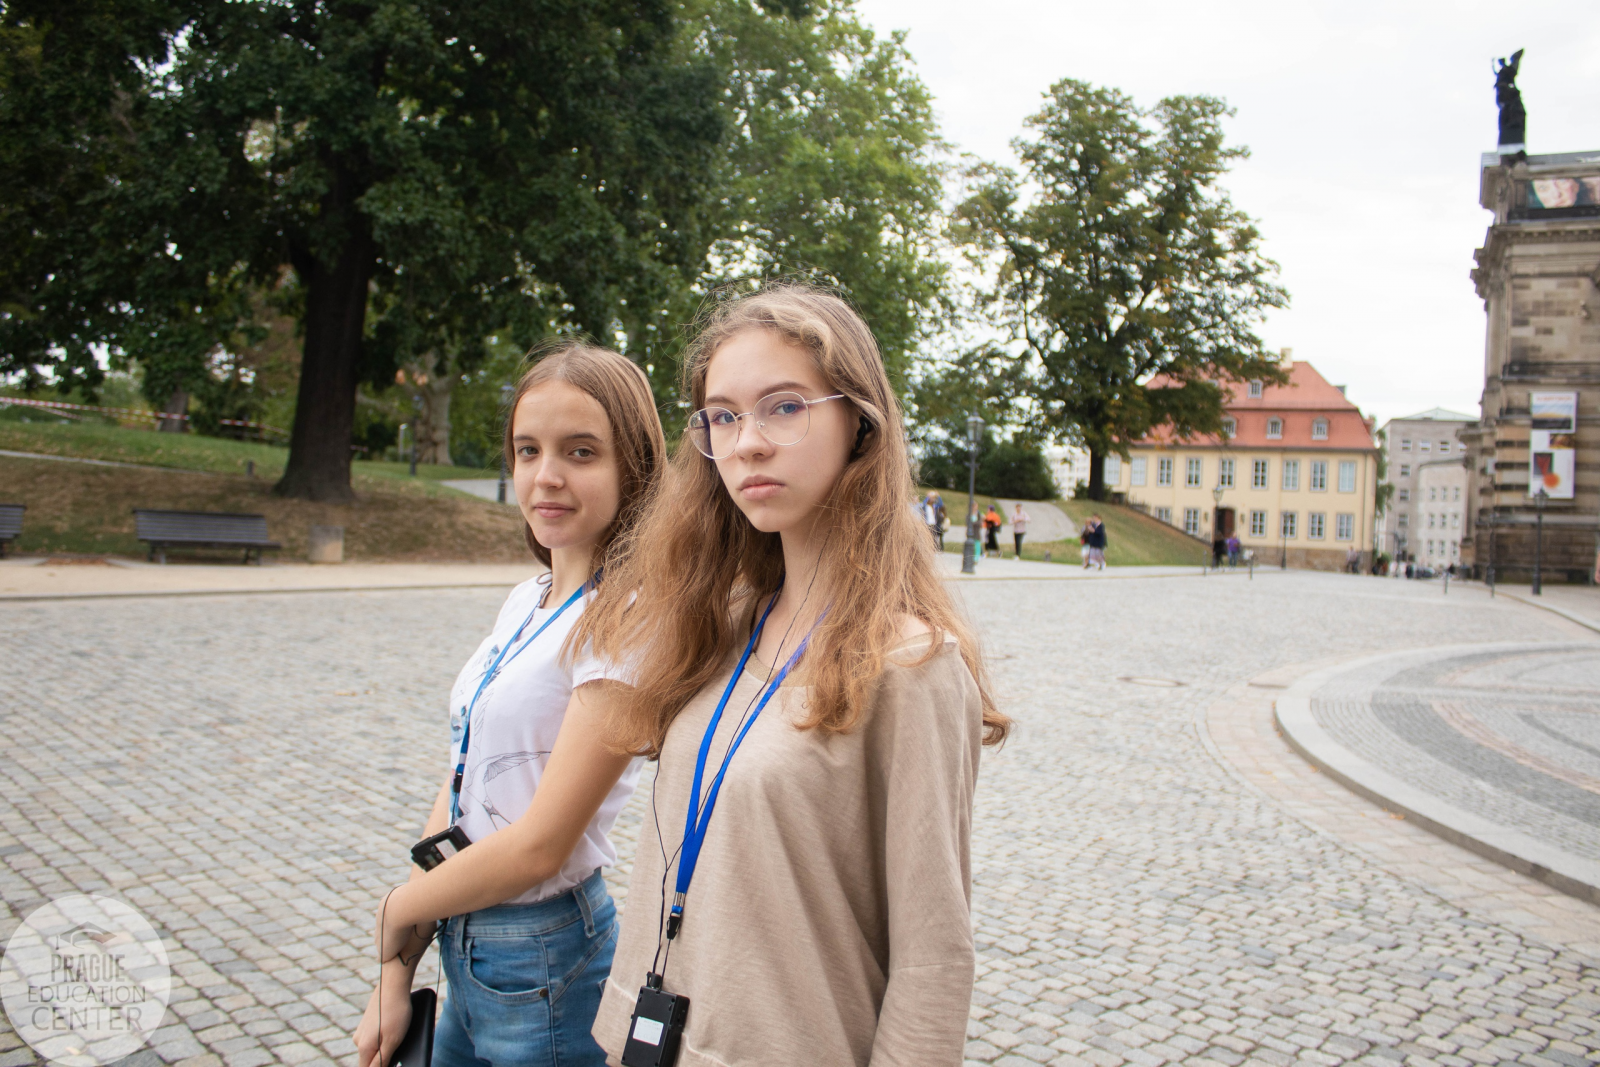 Пражский Образовательный Центр предлагает изучение чешского языка, подготовку к вступительным экзаменам и культурные программы, такие как экскурсии по Праге и Брно, посещение интересных мест, музеев и галерей